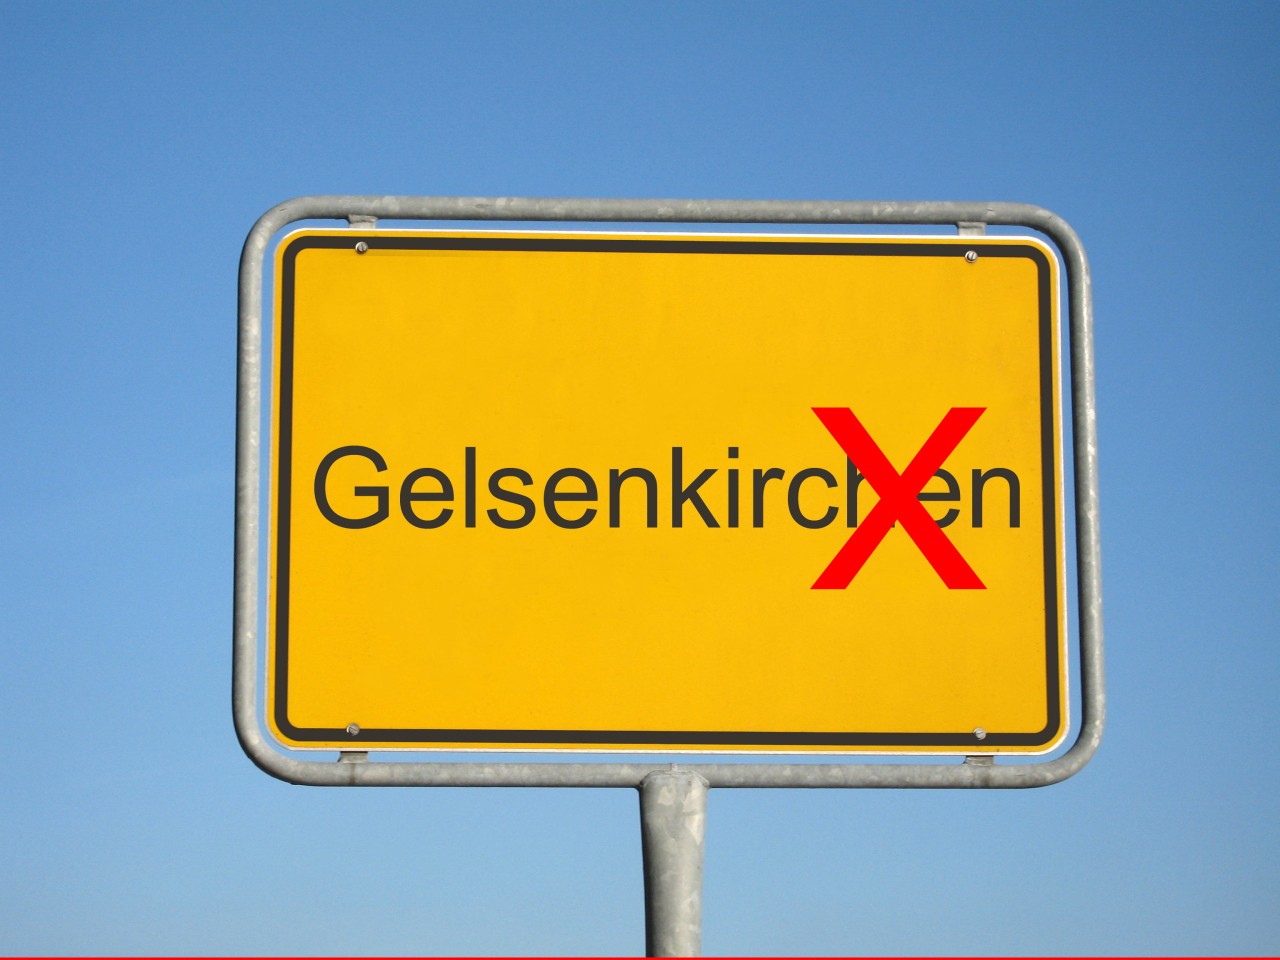 Gelsenkirchen oder „Gelsenkir“ - das ist hier die Frage.